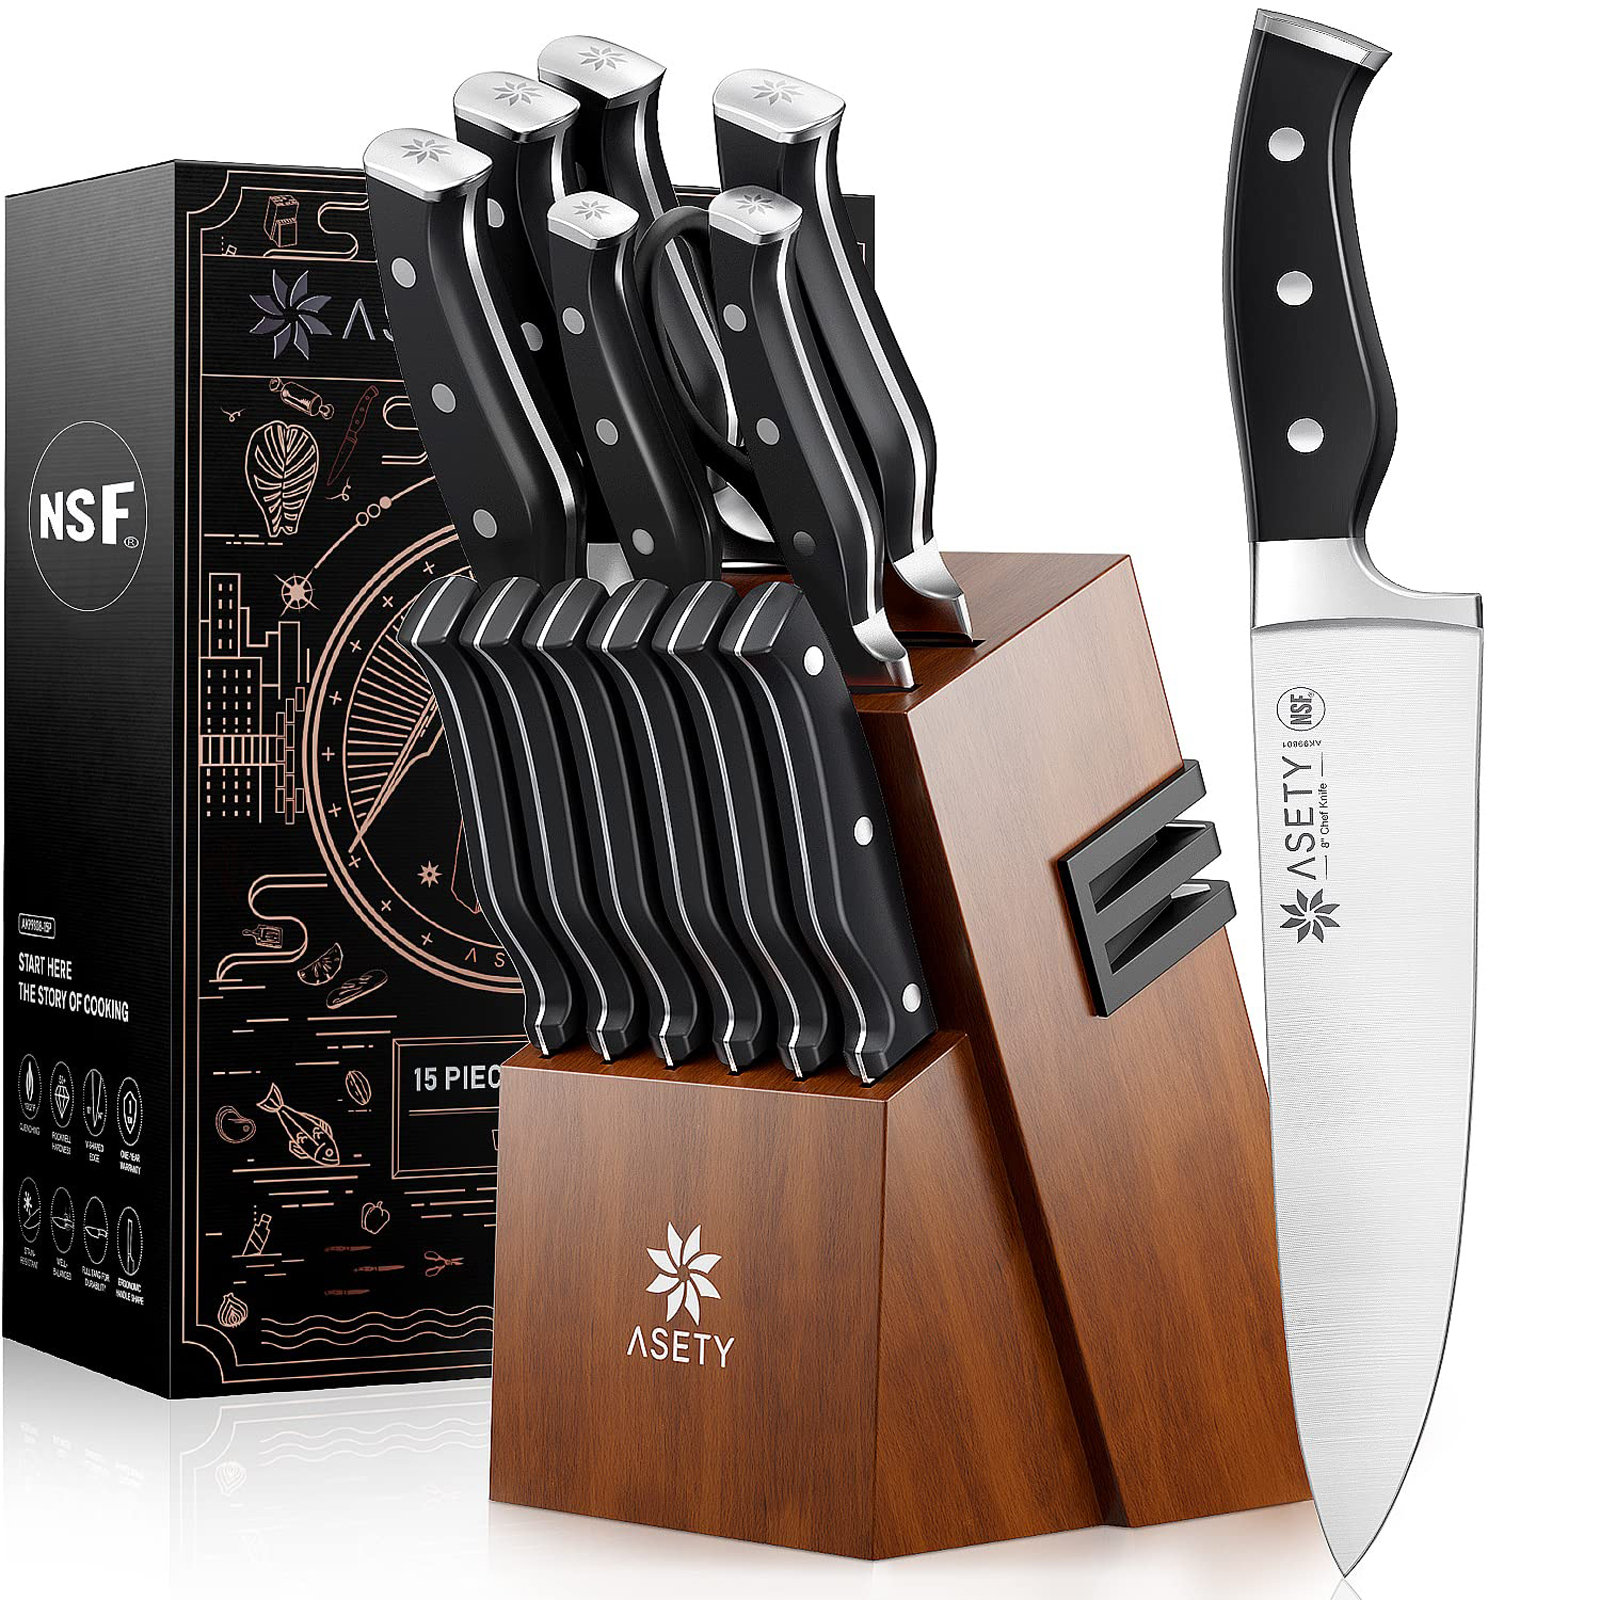 LUXESIT 15 Piece Stainless Steel Knife Block Set